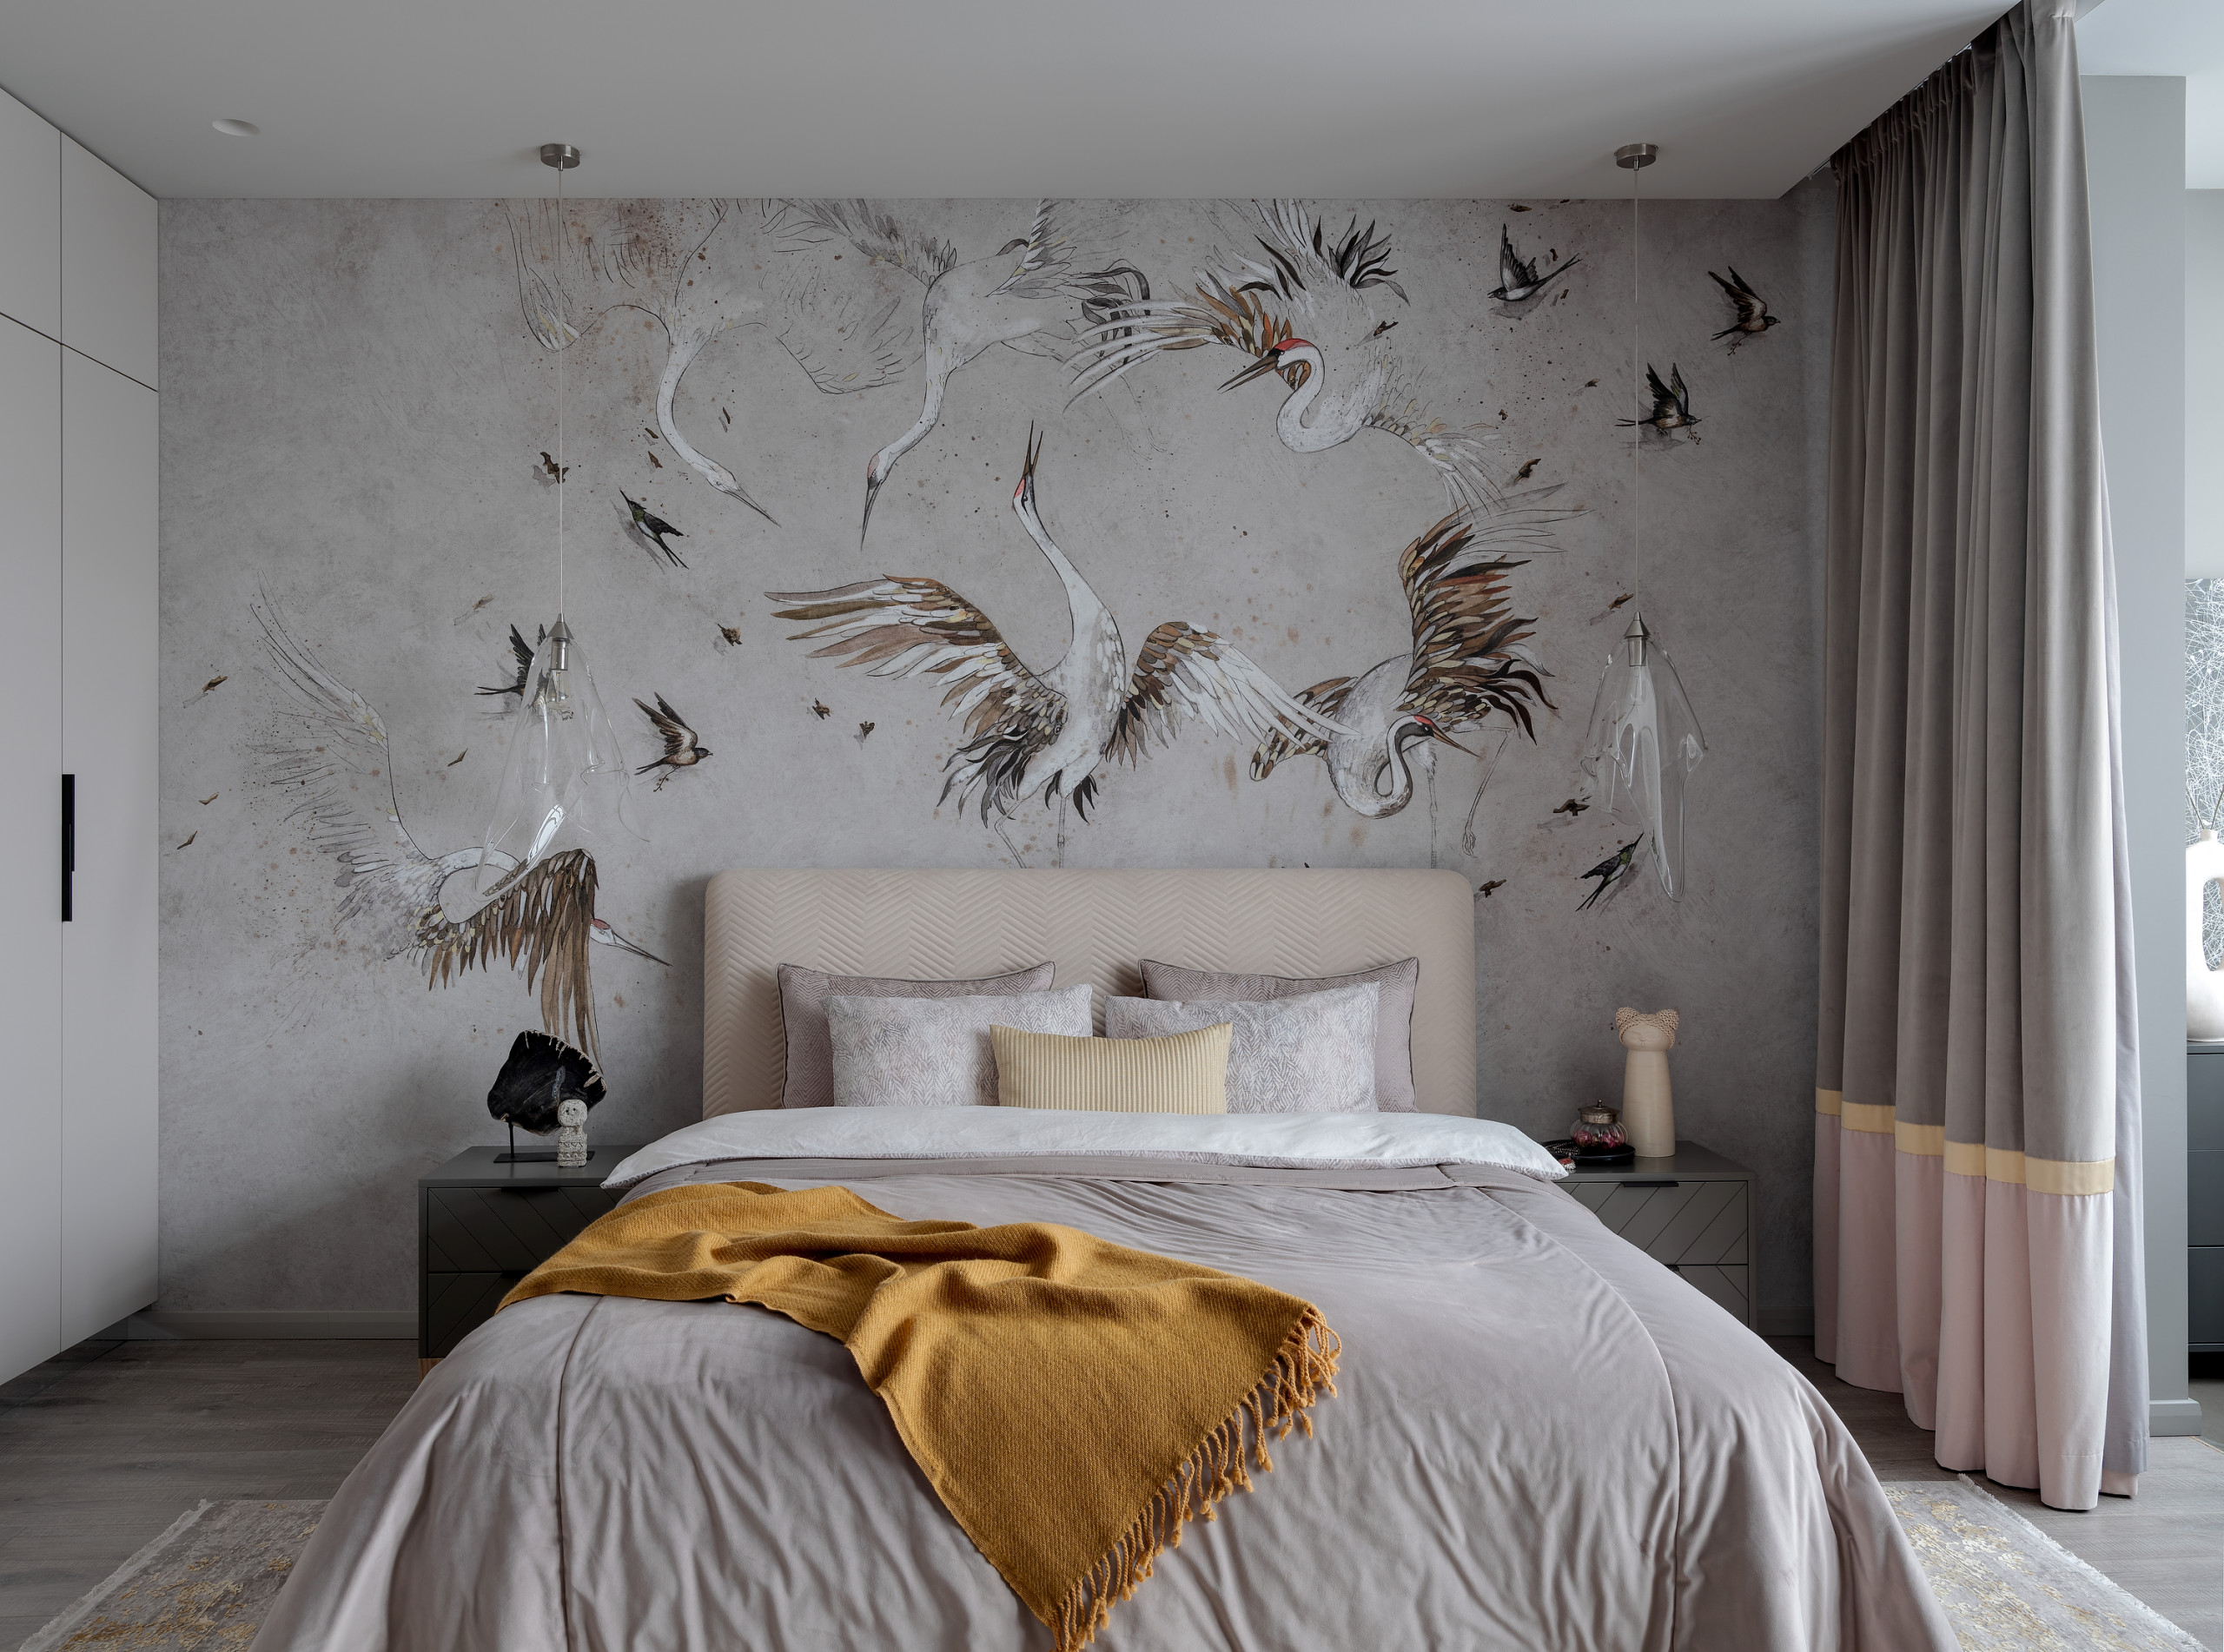 Дизайн спальни - модные тенденции и советы по оформлению интерьера